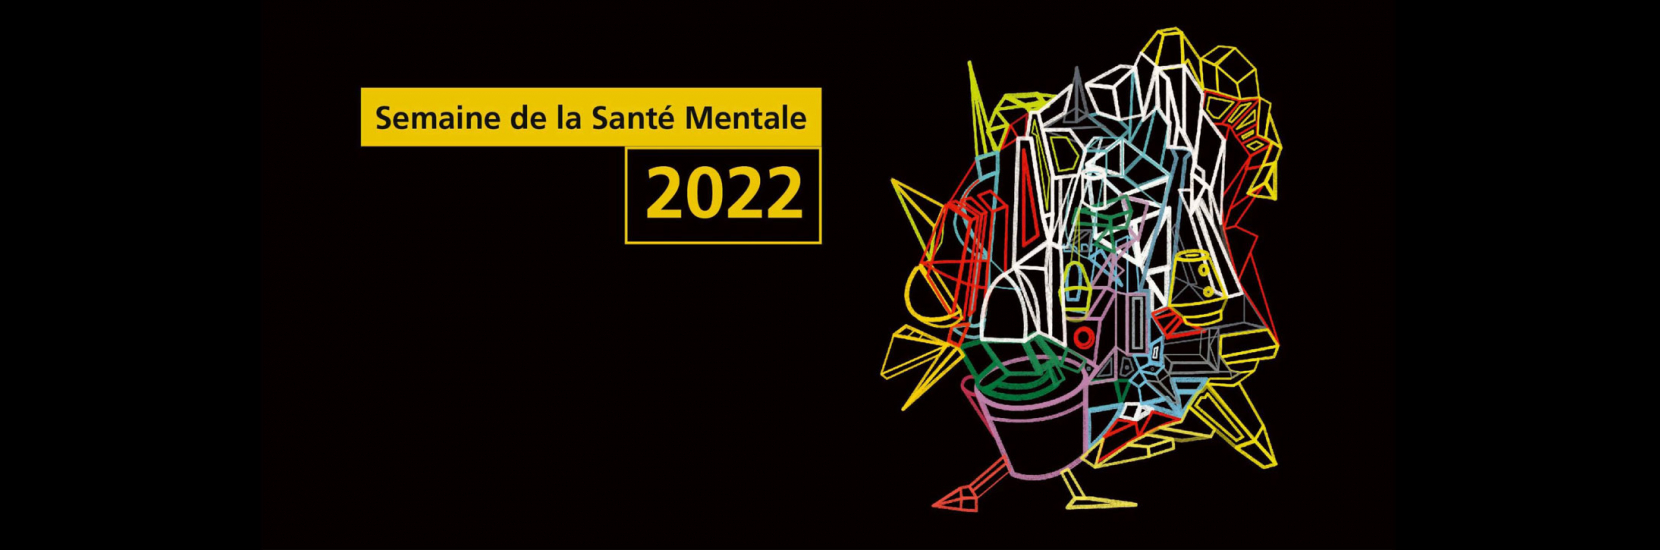 Le CHL se joint à l'édition 2022 de la "Semaine de la Santé mentale"